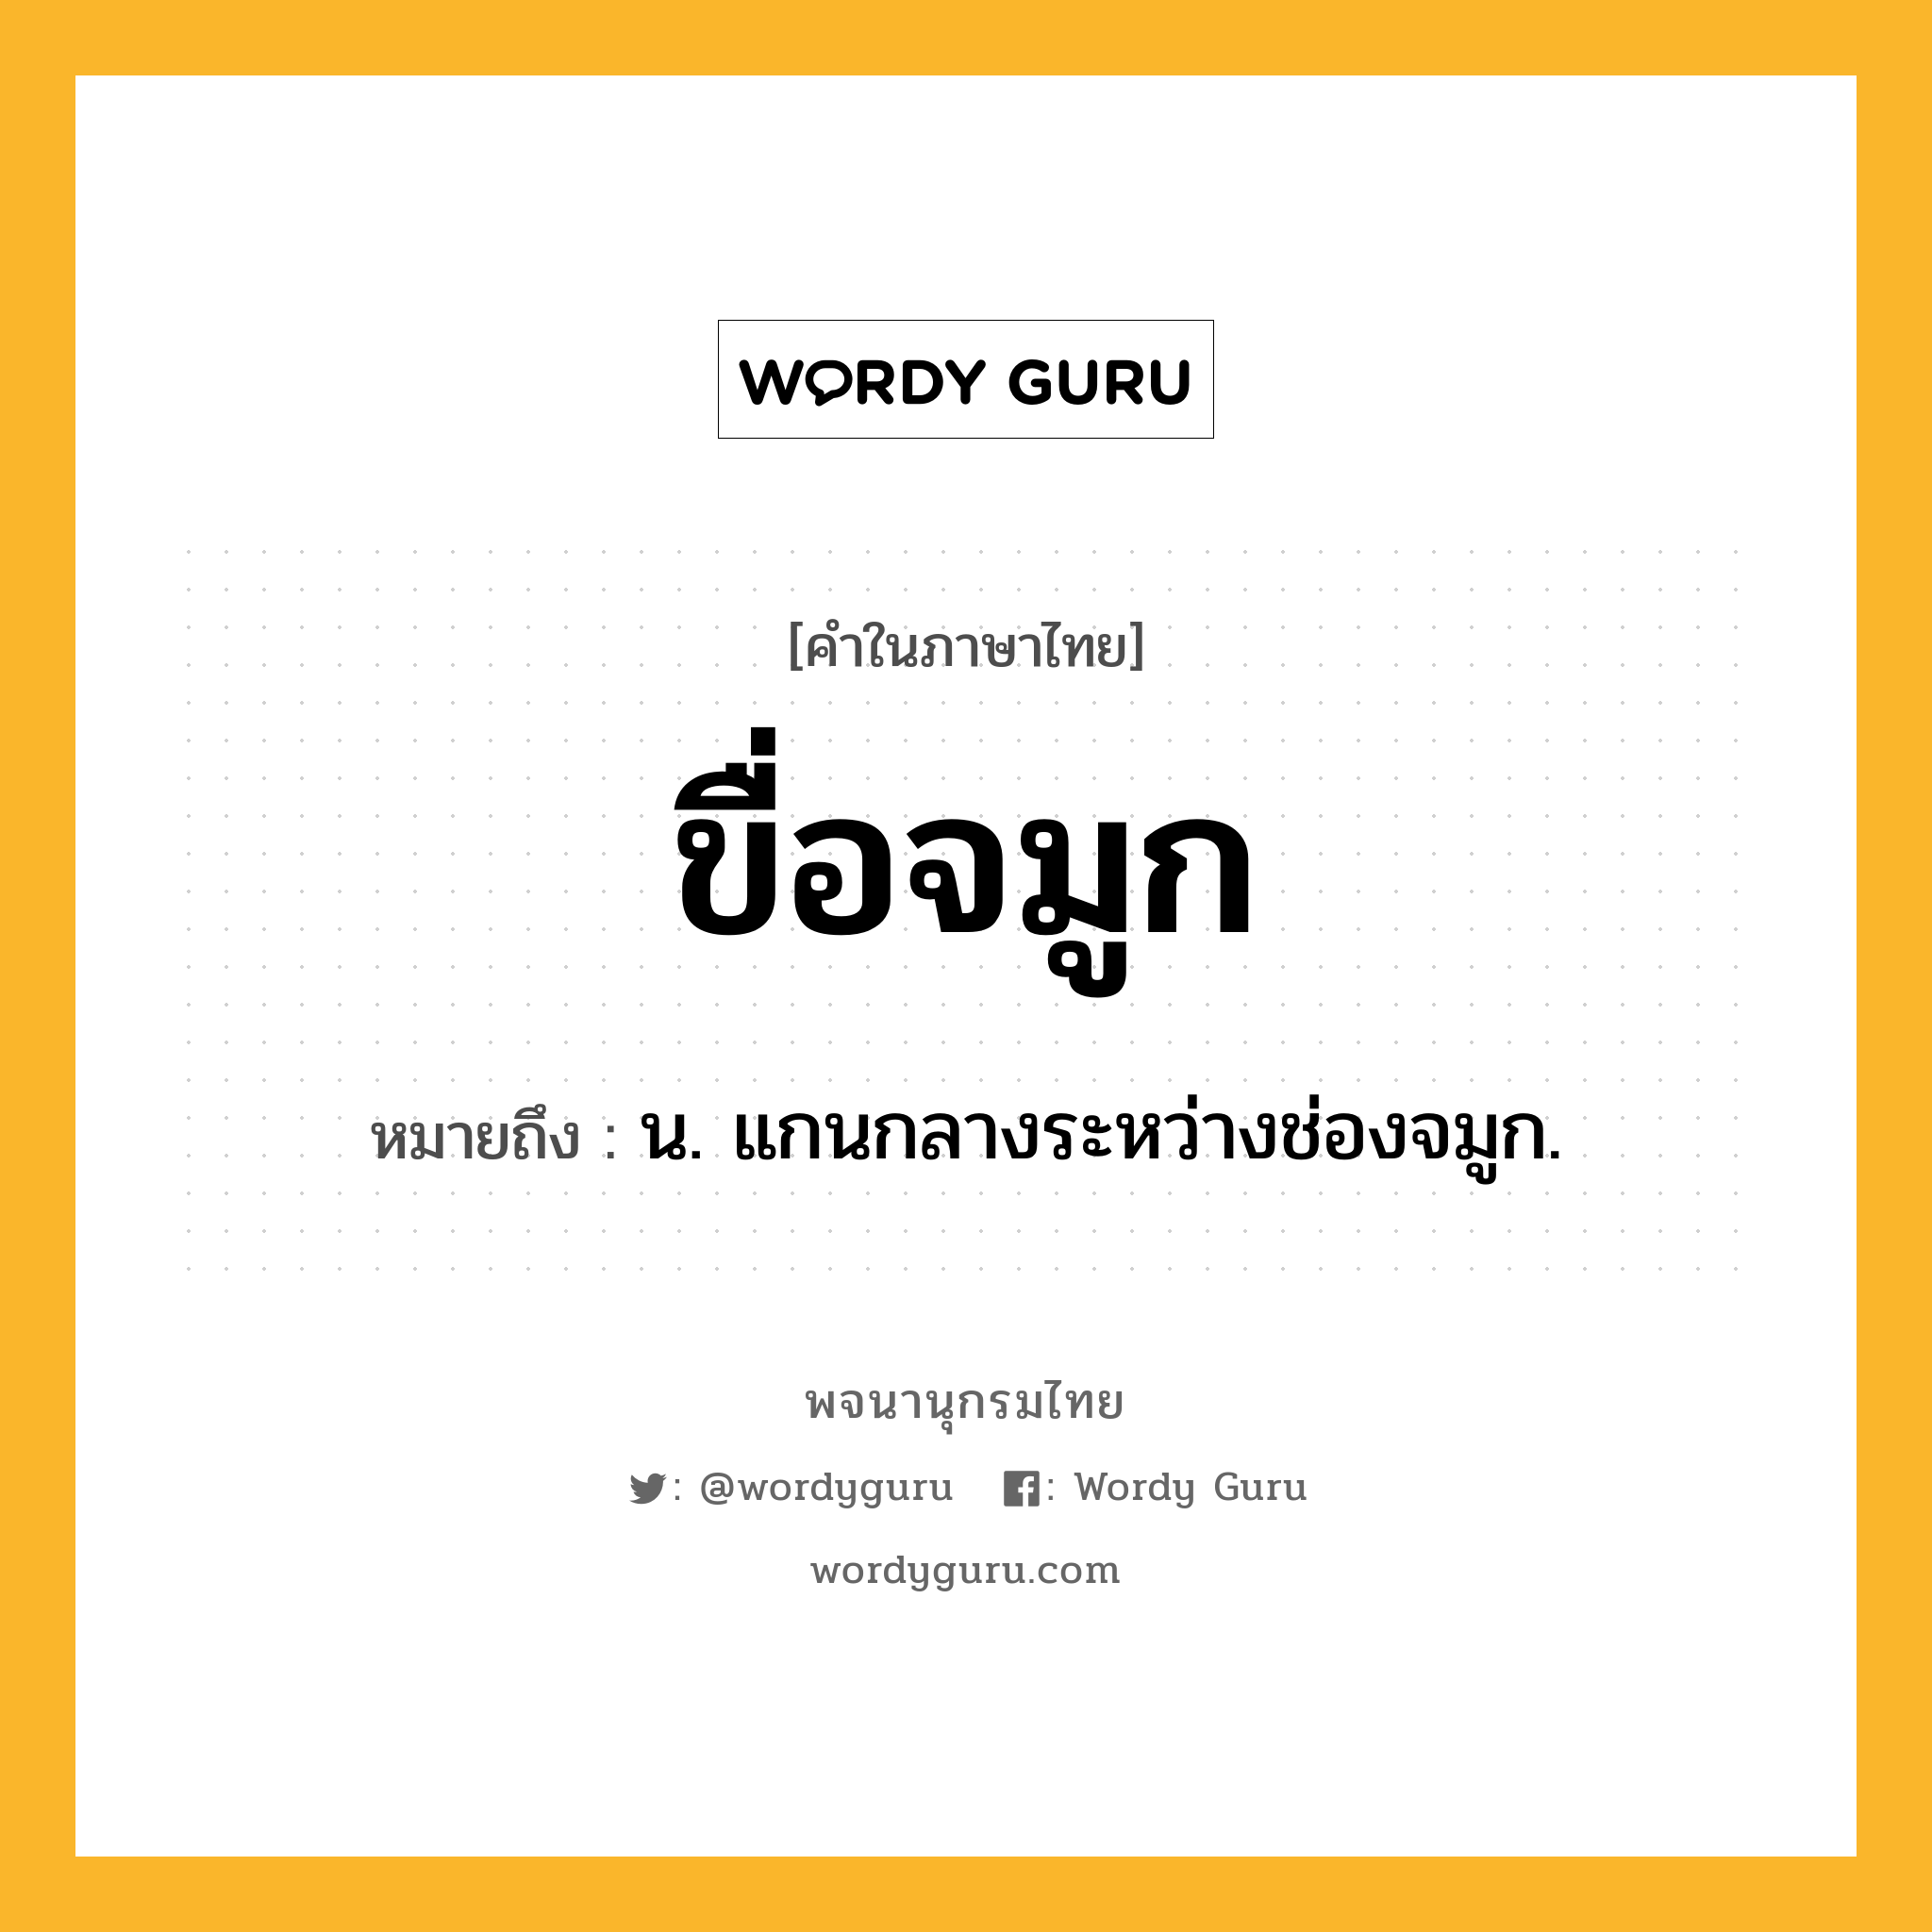 ขื่อจมูก หมายถึงอะไร?, คำในภาษาไทย ขื่อจมูก หมายถึง น. แกนกลางระหว่างช่องจมูก.